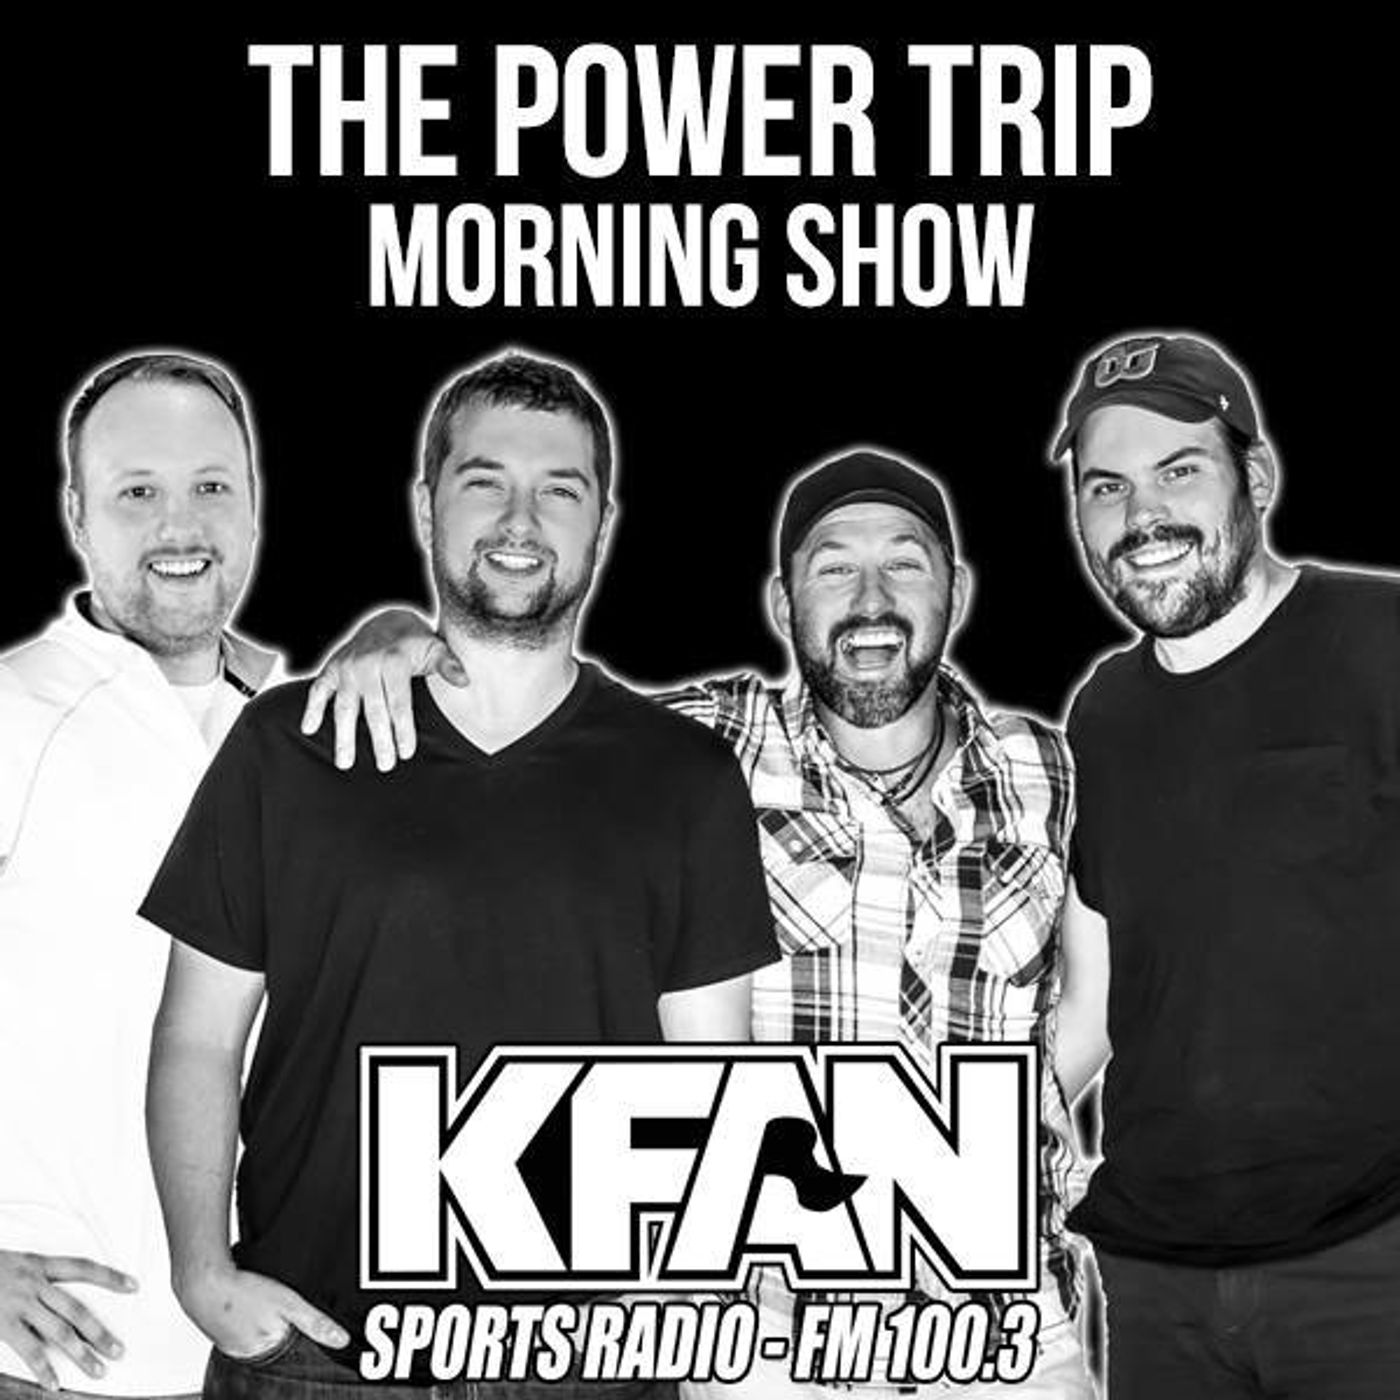 The Power Trip - KFAN FM 100.3